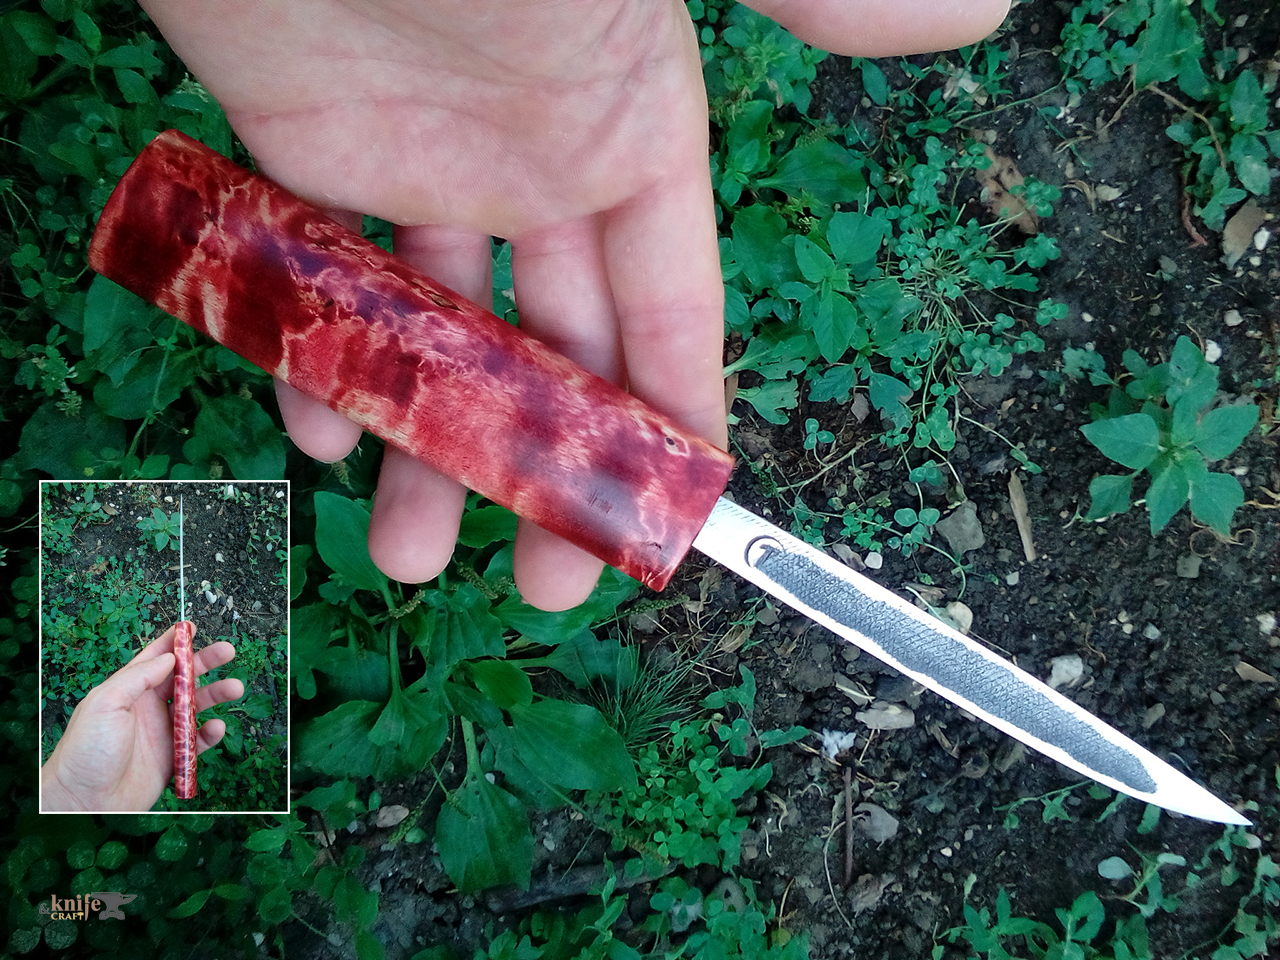 якутский нож в Махачкале, Дагестане